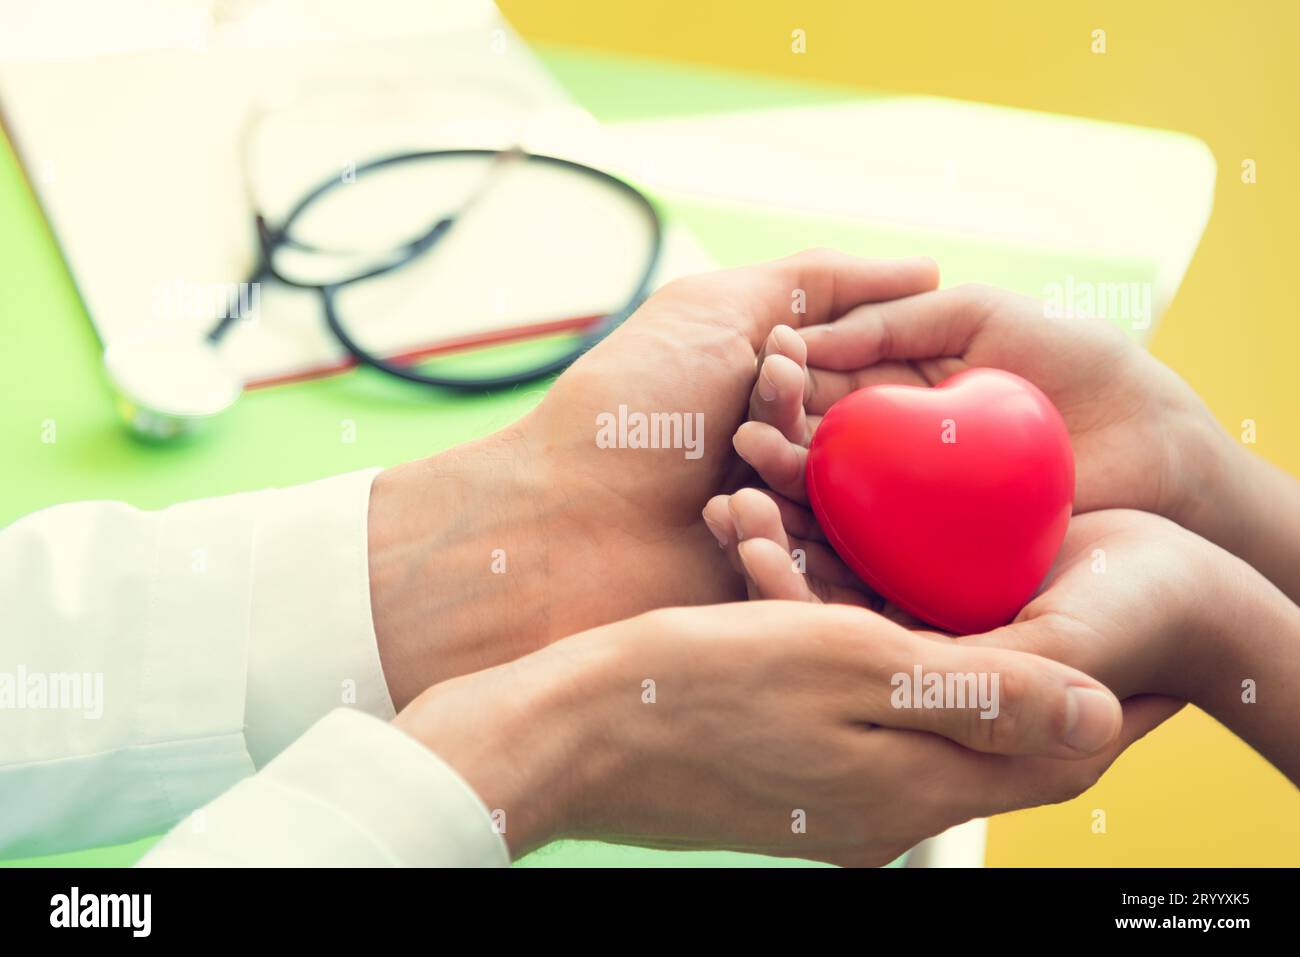 Medico mani e dando rosso cuore di massaggio al paziente i bambini piccoli per recuperare dalla malattia. Ospedale e concetto di assistenza sanitaria. La rianimazione cardiopolmonare e cardi Foto Stock